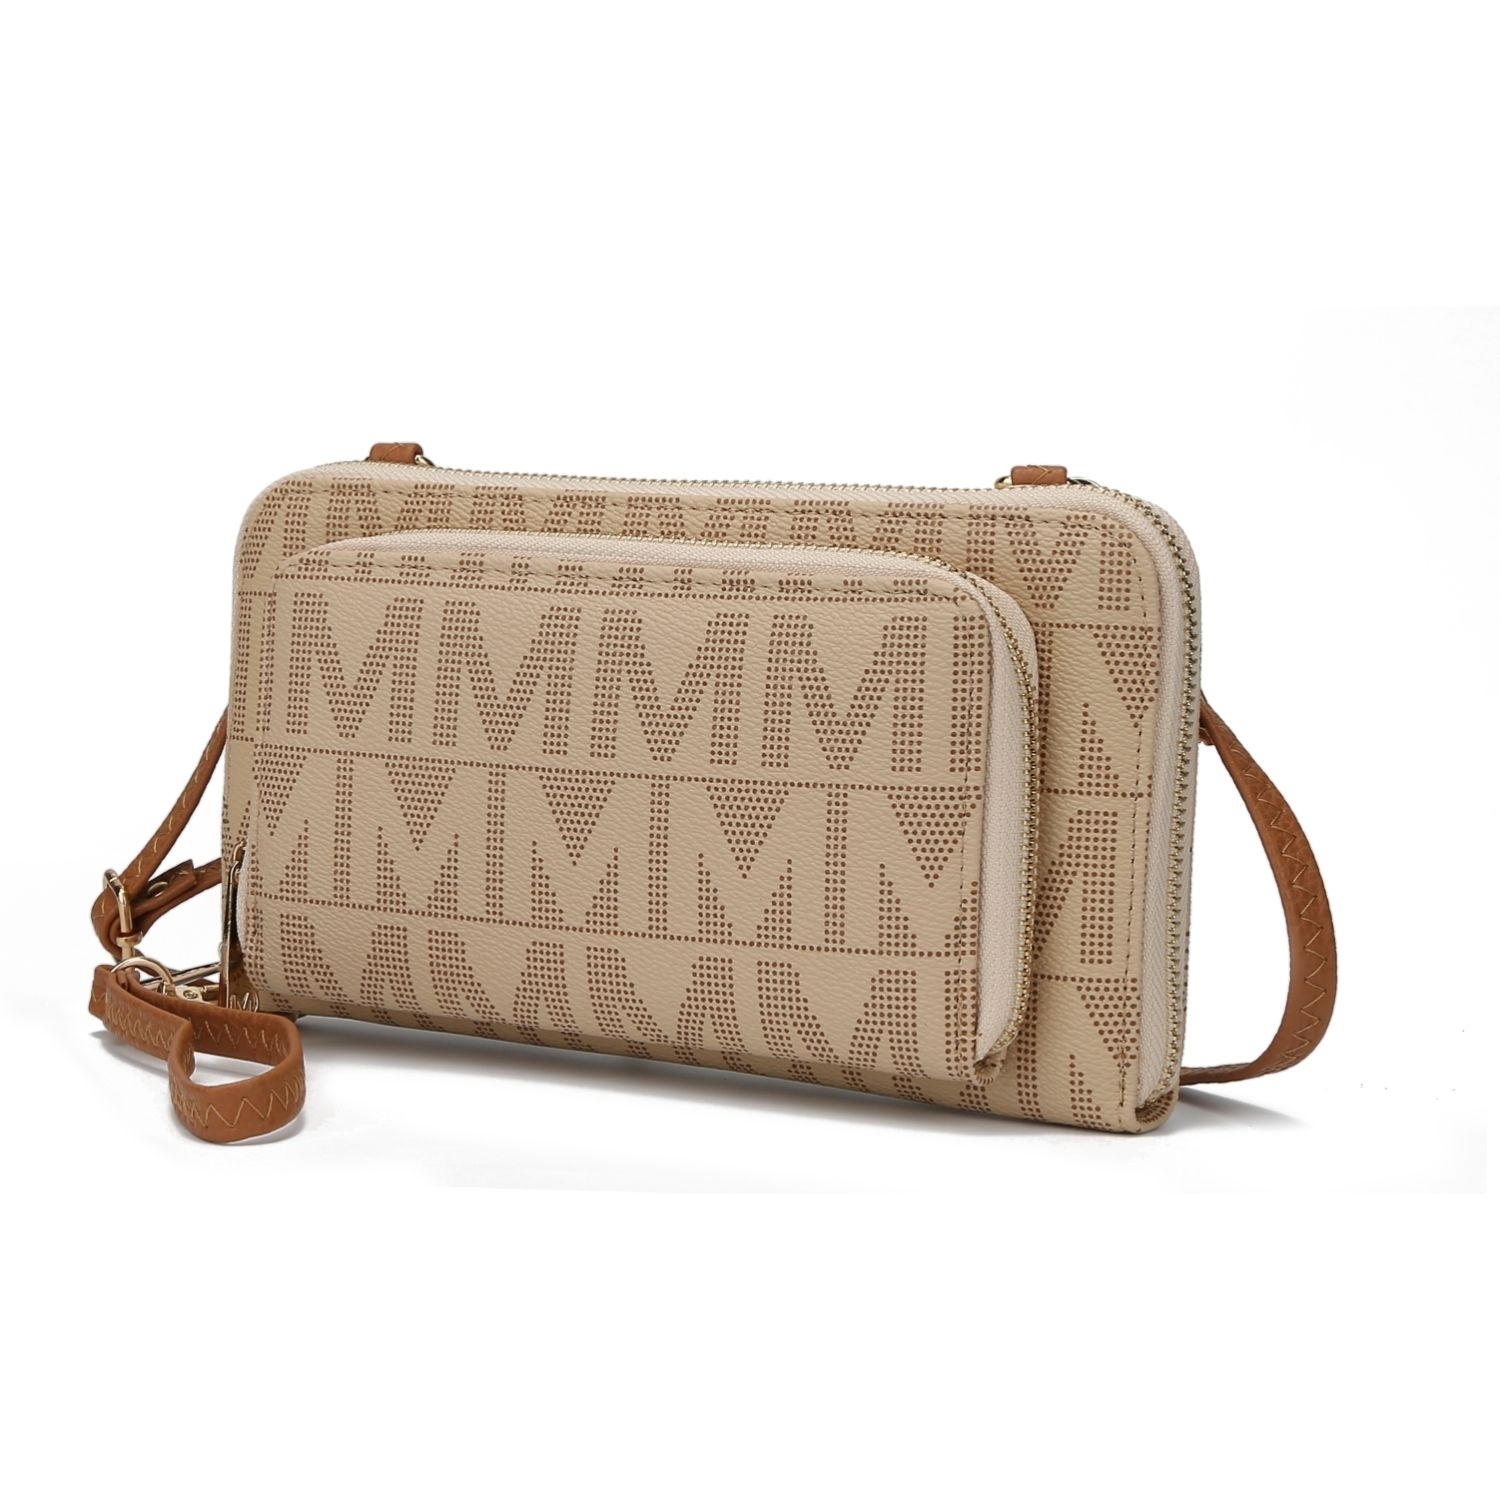 MKF Collection Dilma Wallet Smartphone Convertible Crossbody Handbag By Mia K - Grey